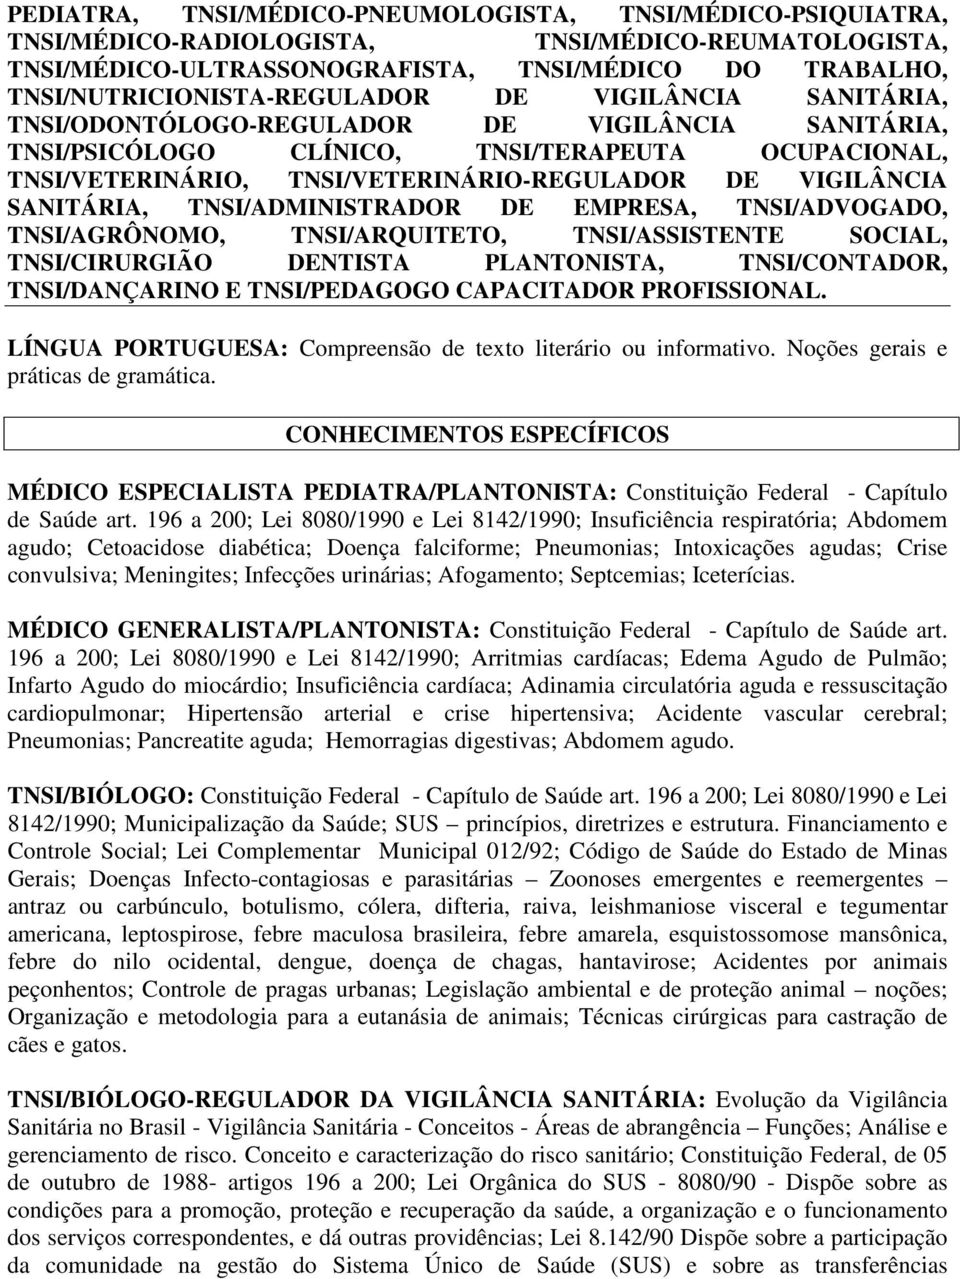 TNSI/VETERINÁRIO-REGULADOR DE VIGILÂNCIA SANITÁRIA, TNSI/ADMINISTRADOR DE EMPRESA, TNSI/ADVOGADO, TNSI/AGRÔNOMO, TNSI/ARQUITETO, TNSI/ASSISTENTE SOCIAL, TNSI/CIRURGIÃO DENTISTA PLANTONISTA,